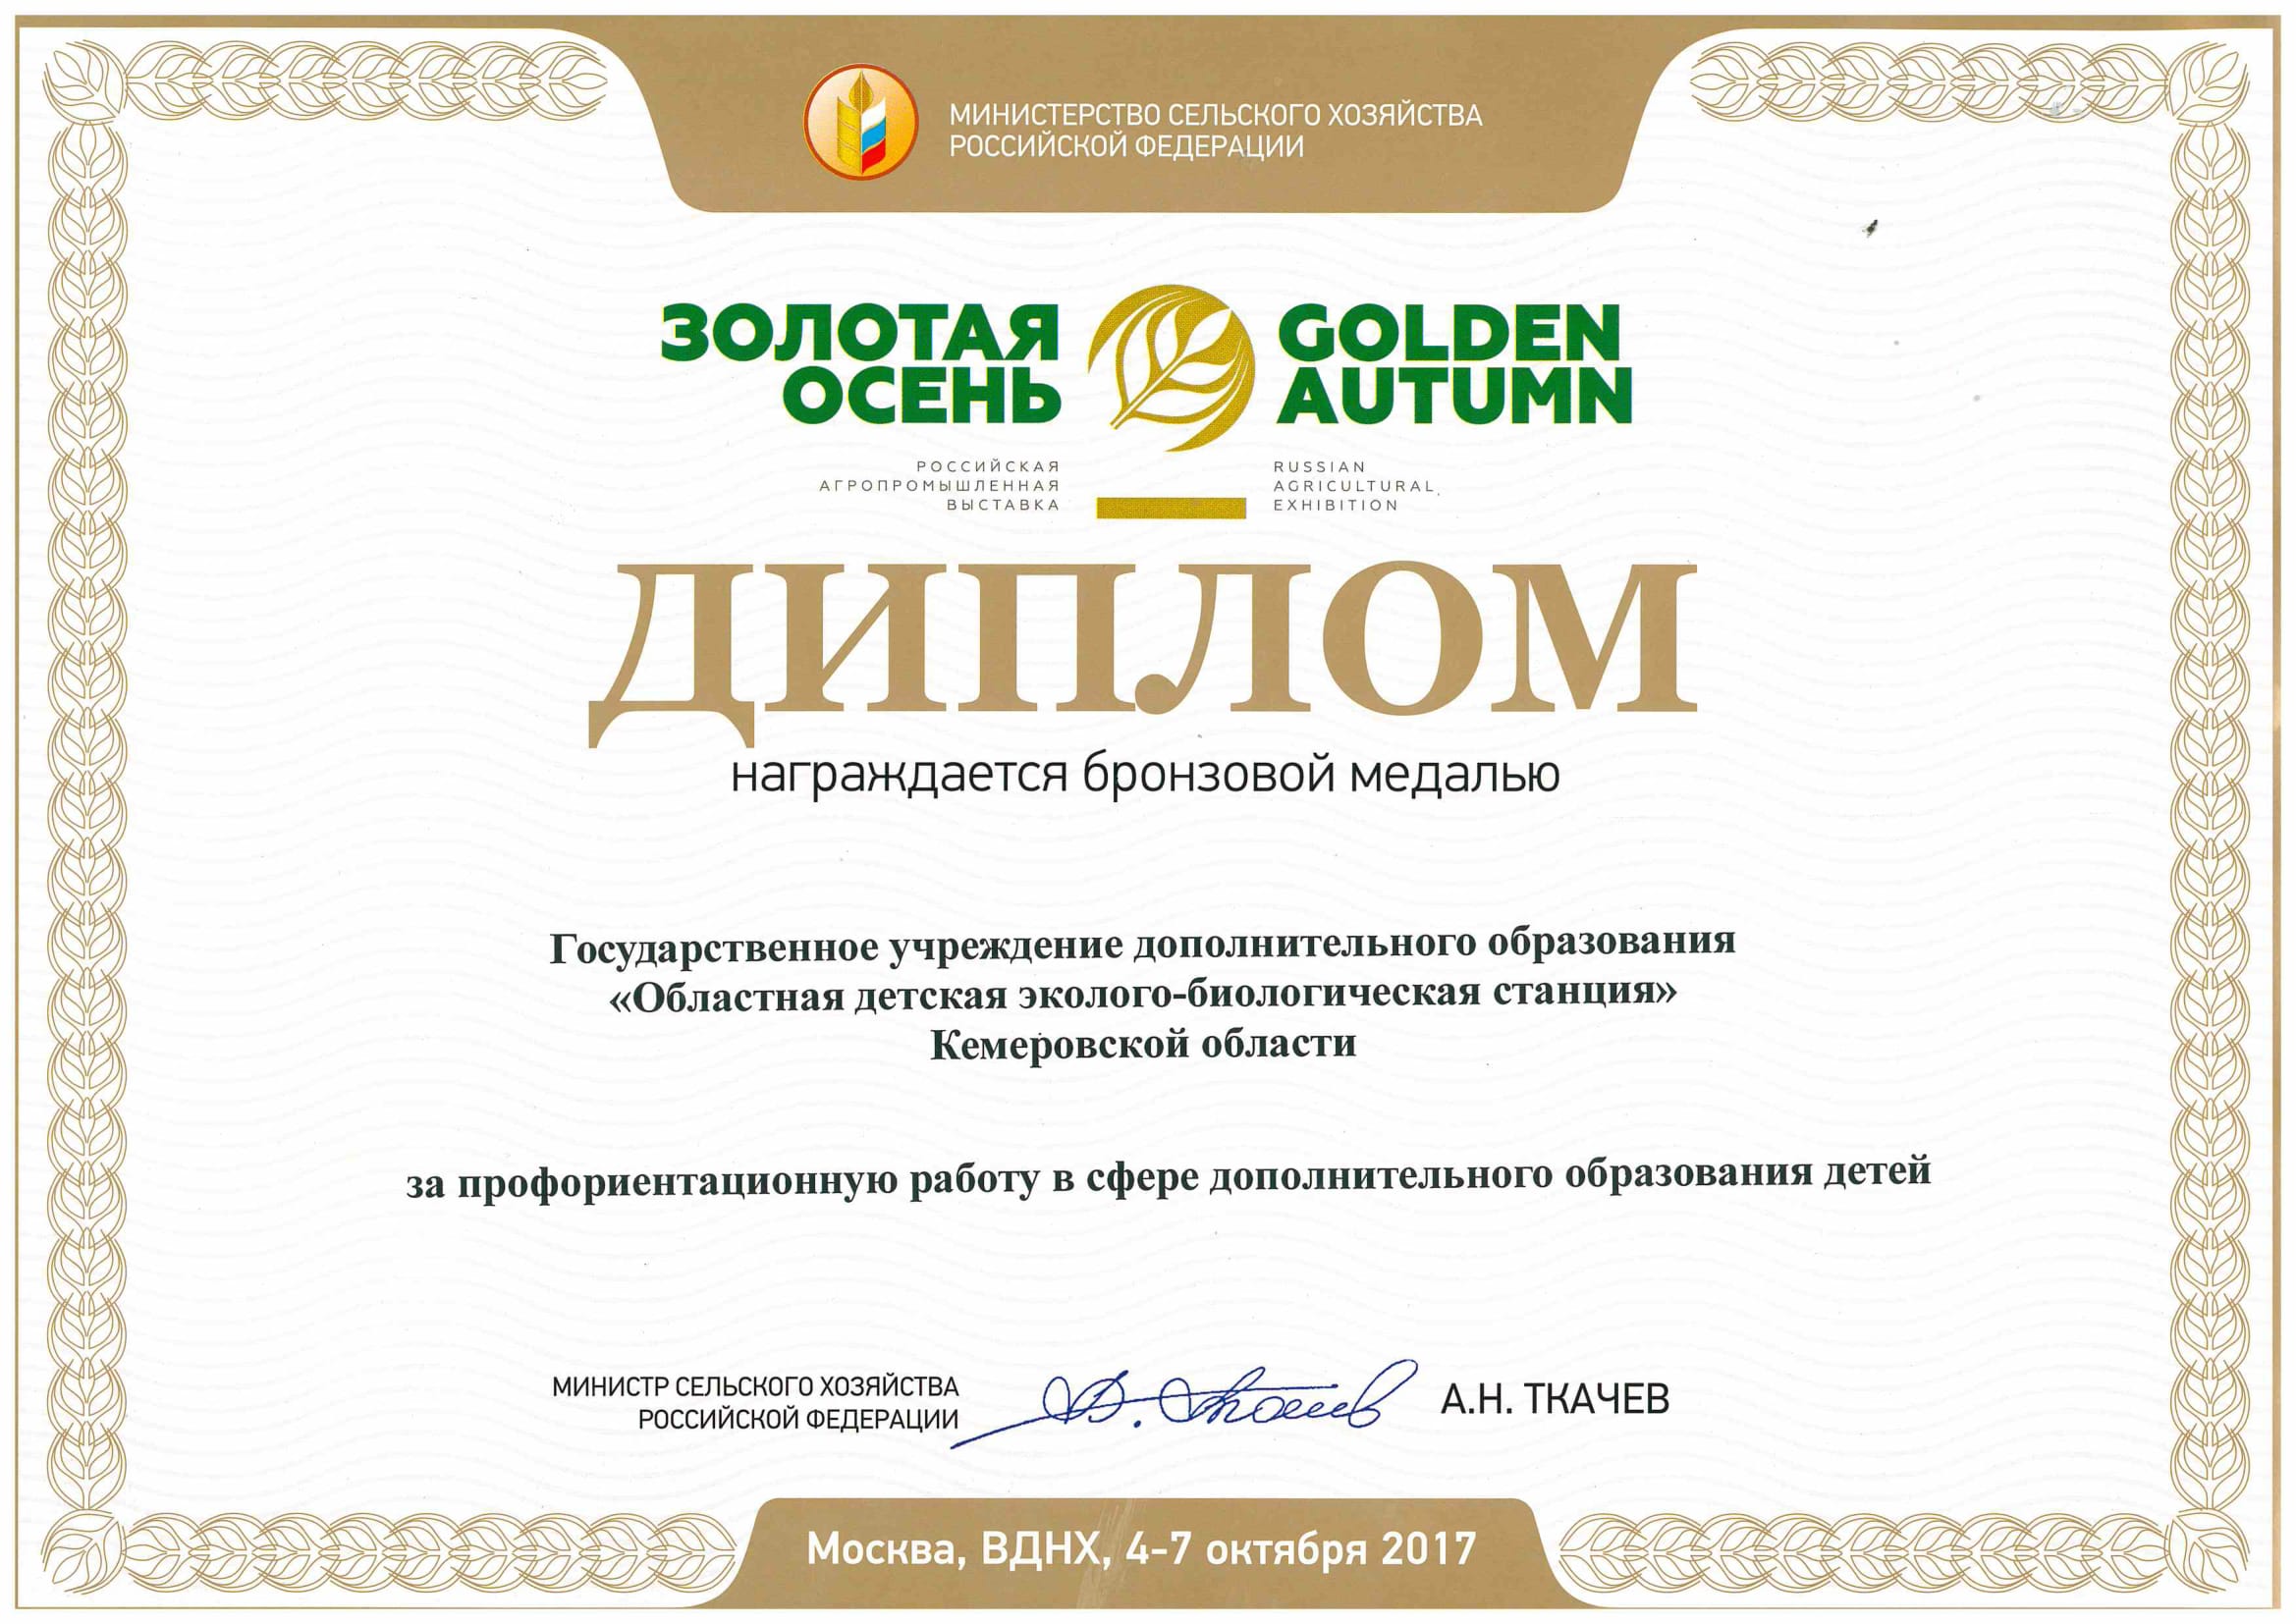 Делегация Кемеровской области приняла участие в Российской агропромышленной  выставке «Золотая осень», которая проходила с 4 по 7 октября  в г. Москве